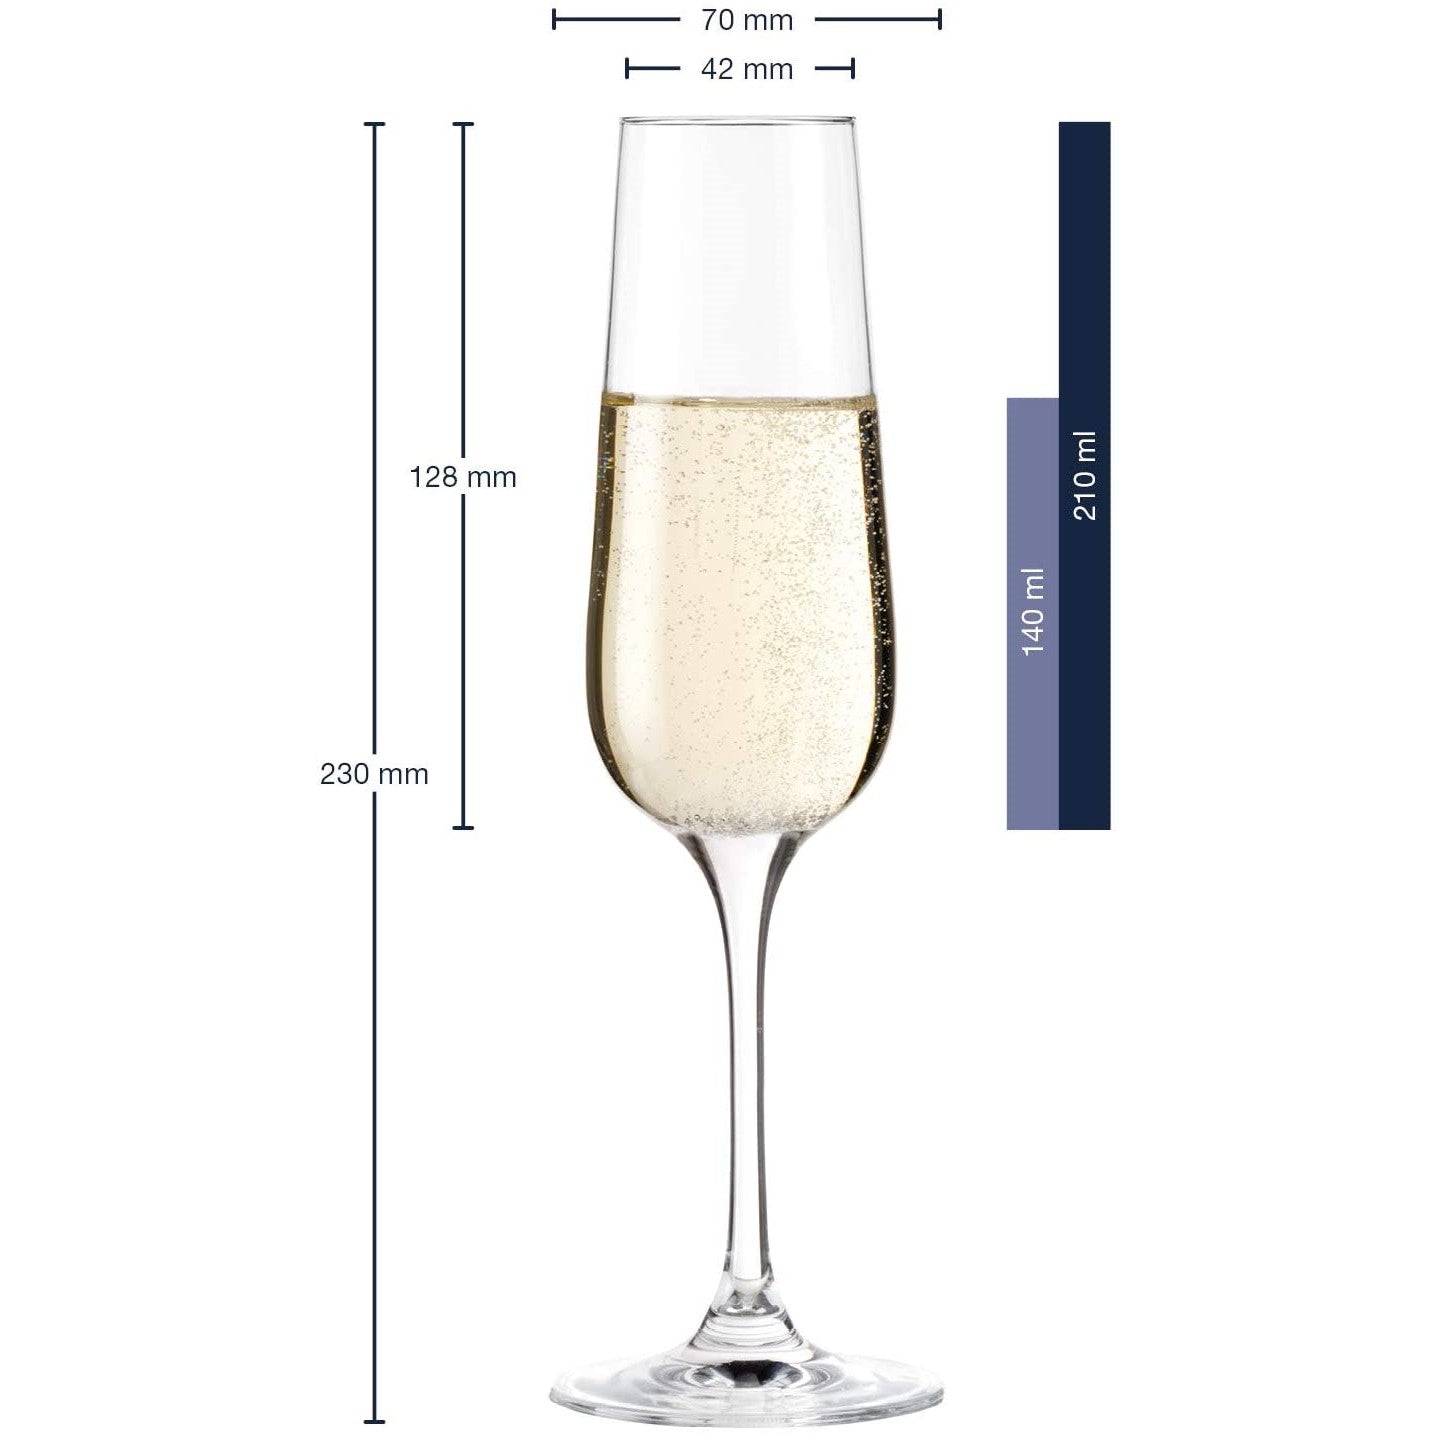 Leonardo TIVOLI Champagne, Red & White Wine Glasses - Set of 18 (6 each)